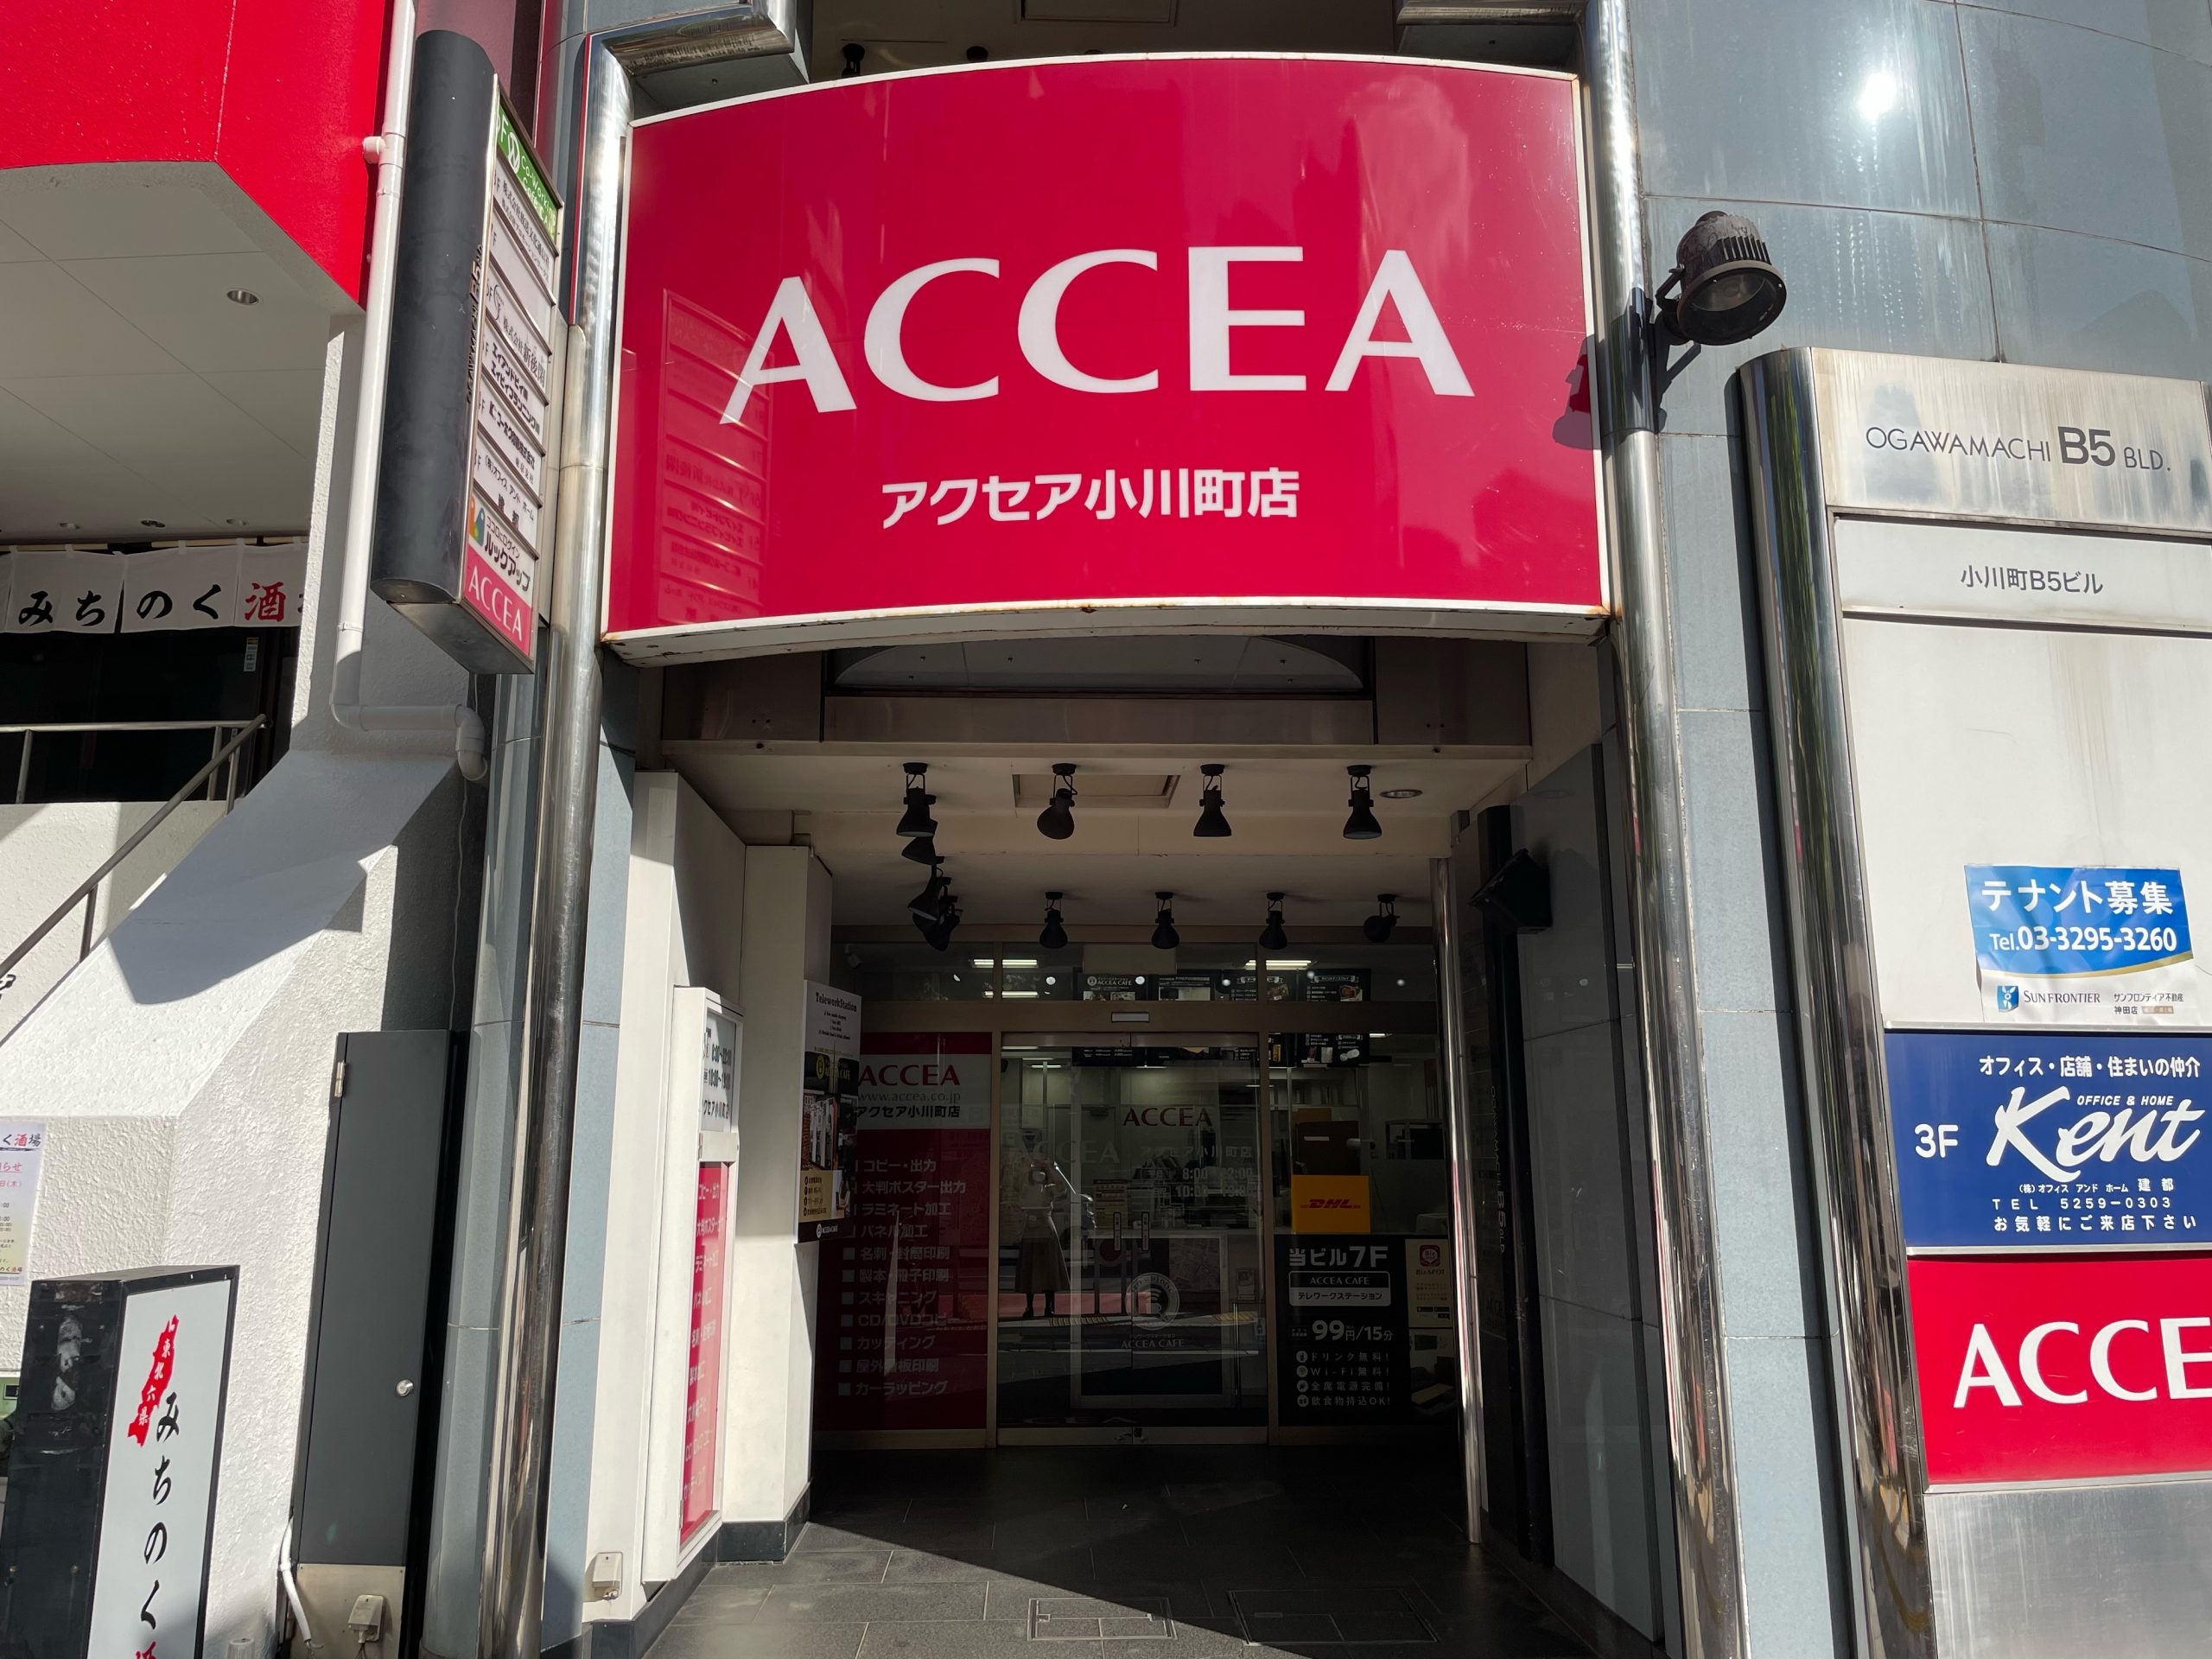 アクセアカフェ 小川町店